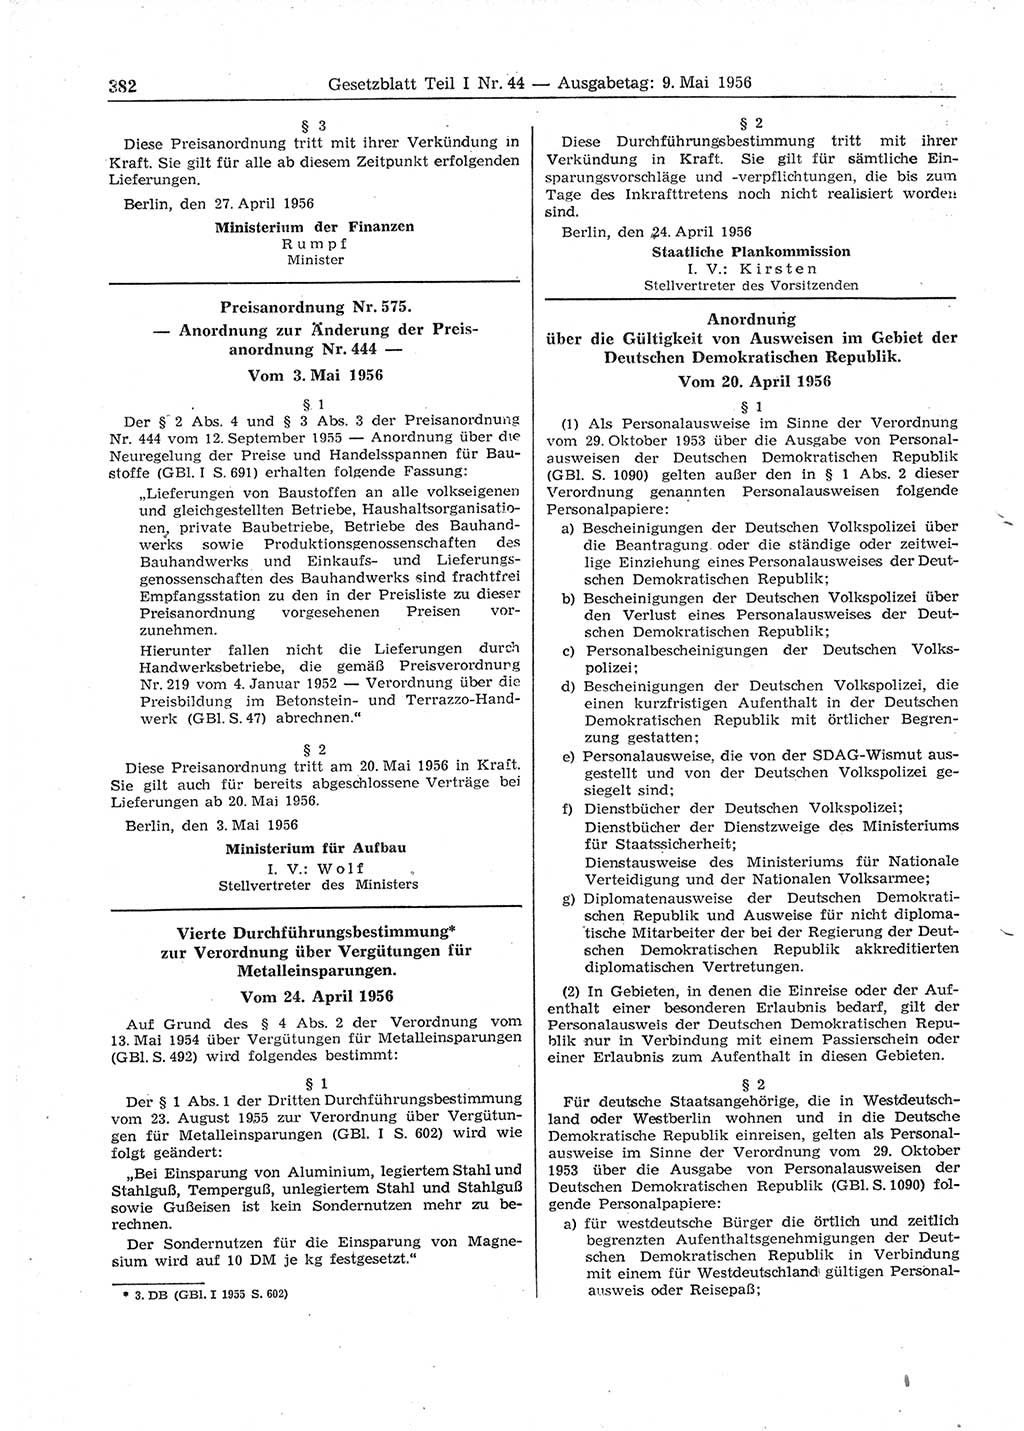 Gesetzblatt (GBl.) der Deutschen Demokratischen Republik (DDR) Teil Ⅰ 1956, Seite 382 (GBl. DDR Ⅰ 1956, S. 382)